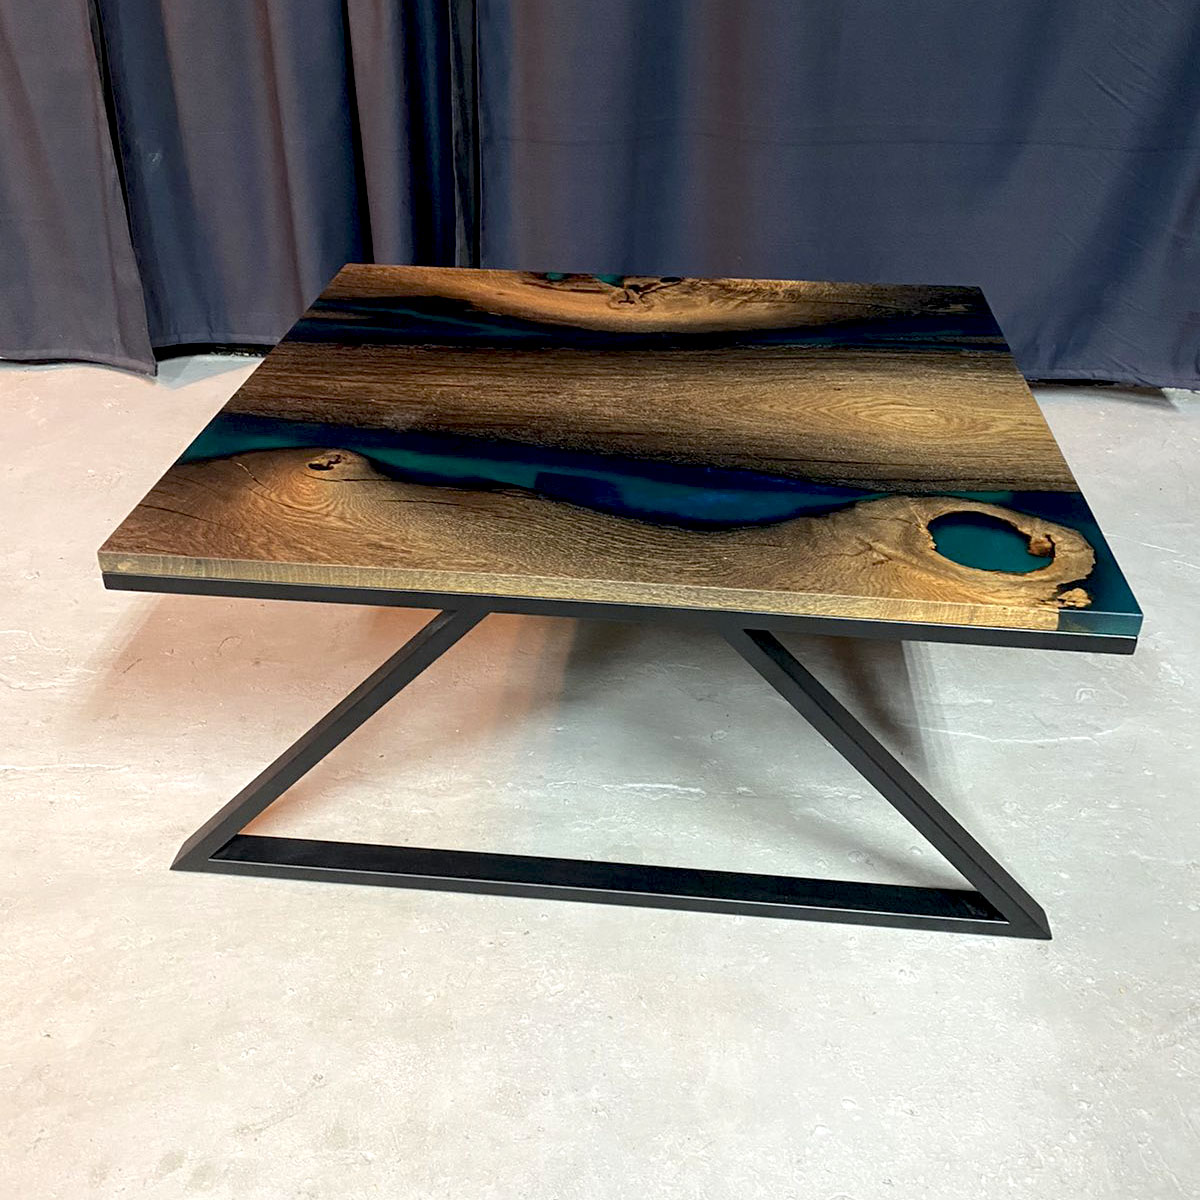 Caer klub sto je dizajniran da se uklapa u gotovo svaki stil nameštaja. Drvo Hrasta u kombinaciji sa epoksi smolom, a konstrukcija od metala.